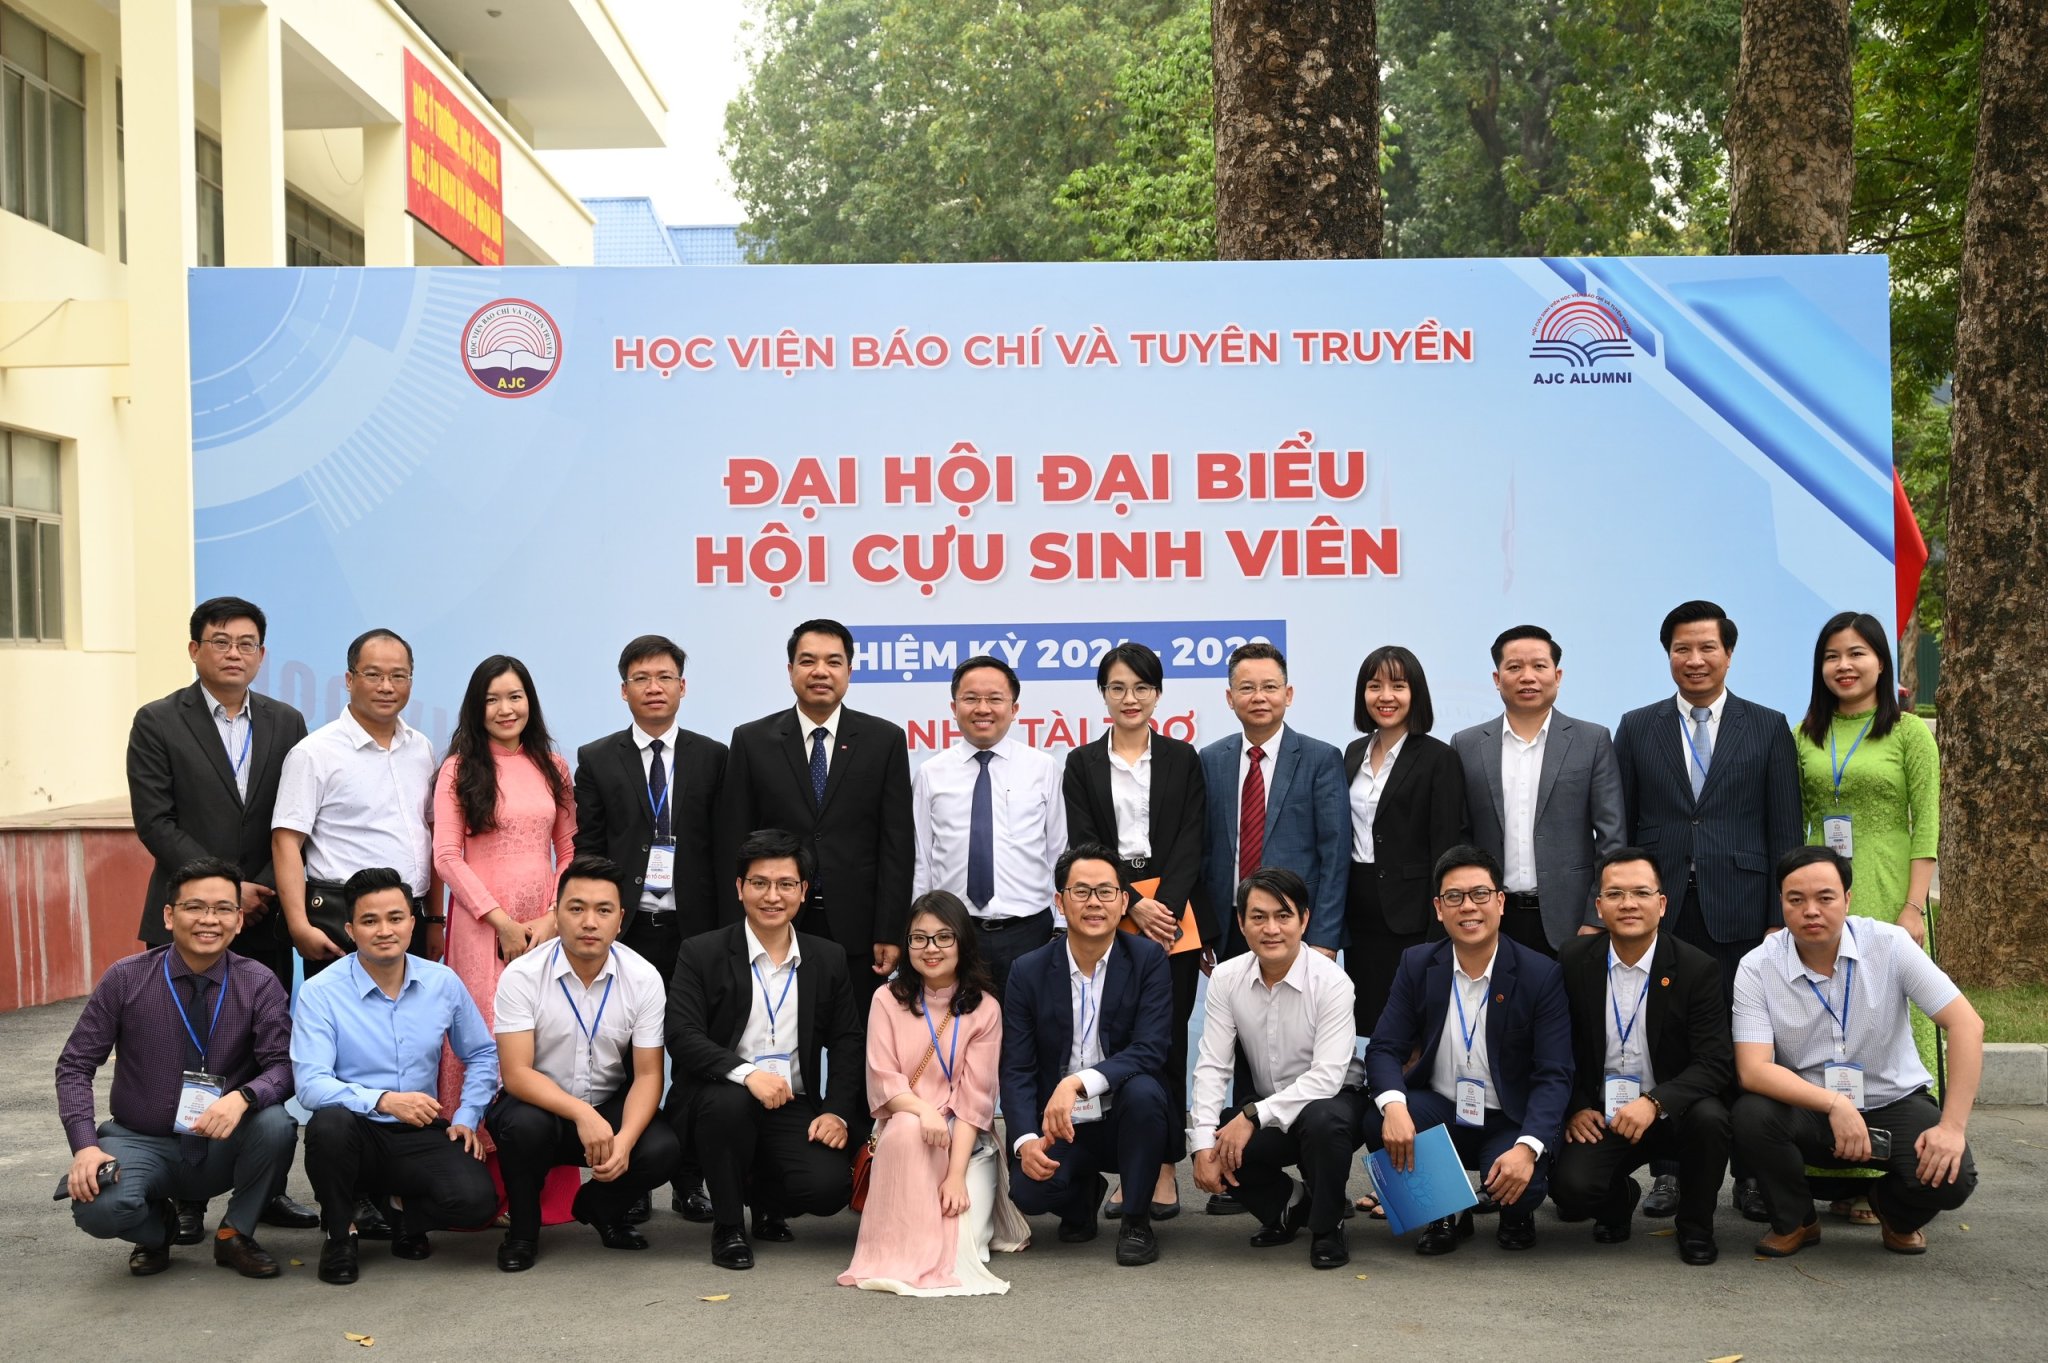 Học viện Báo chí và Tuyên truyền tổ chức Đại hội đại biểu Hội Cựu sinh viên- Ảnh 6.